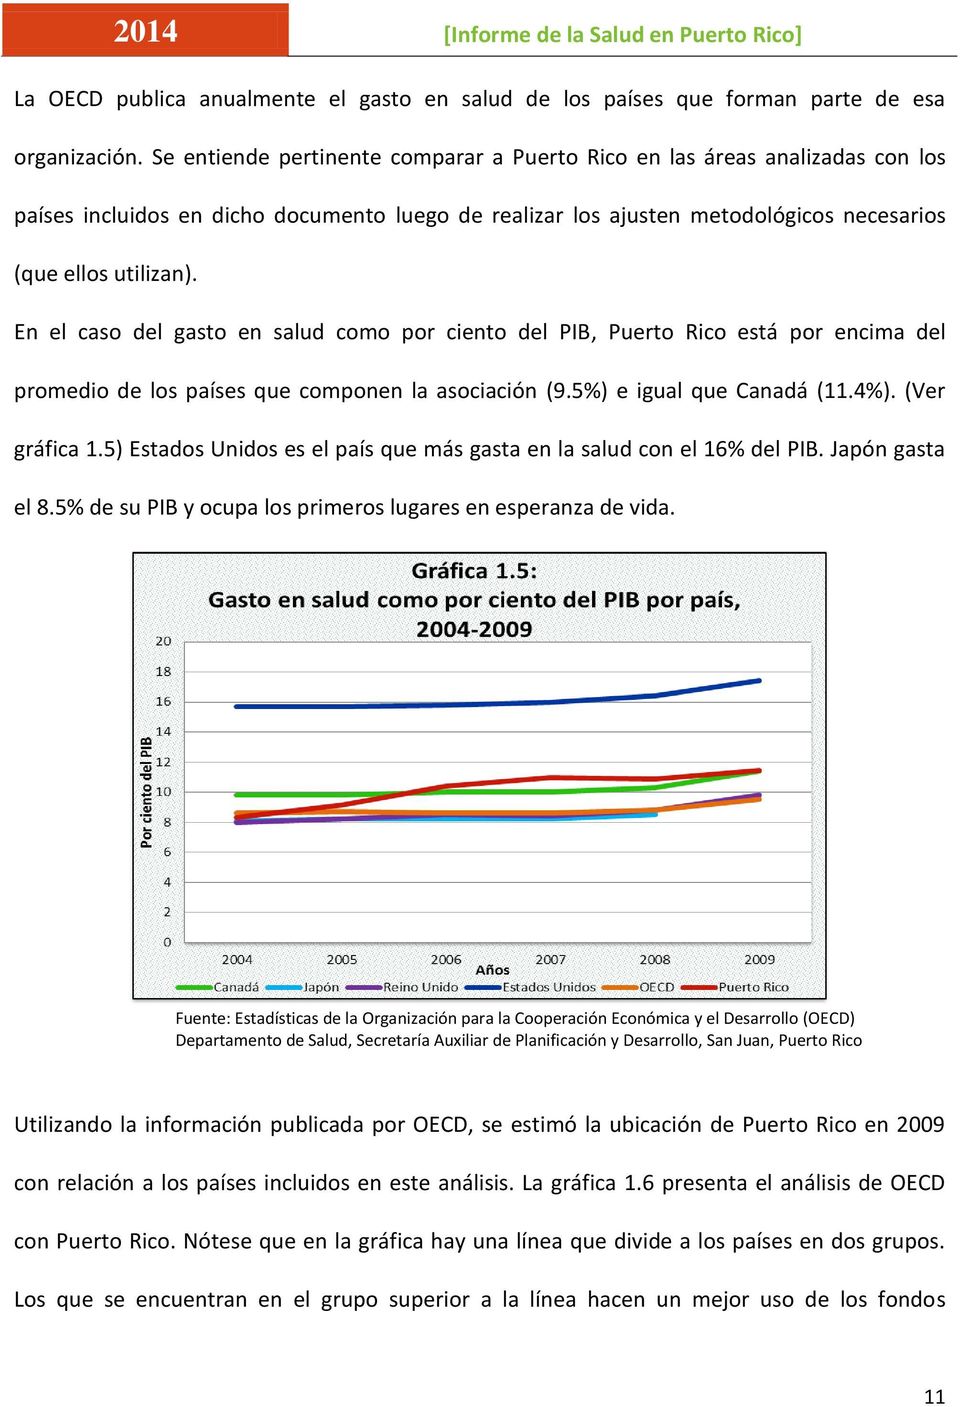 En el caso del gasto en salud como por ciento del PIB, Puerto Rico está por encima del promedio de los países que componen la asociación (9.5%) e igual que Canadá (11.4%). (Ver gráfica 1.